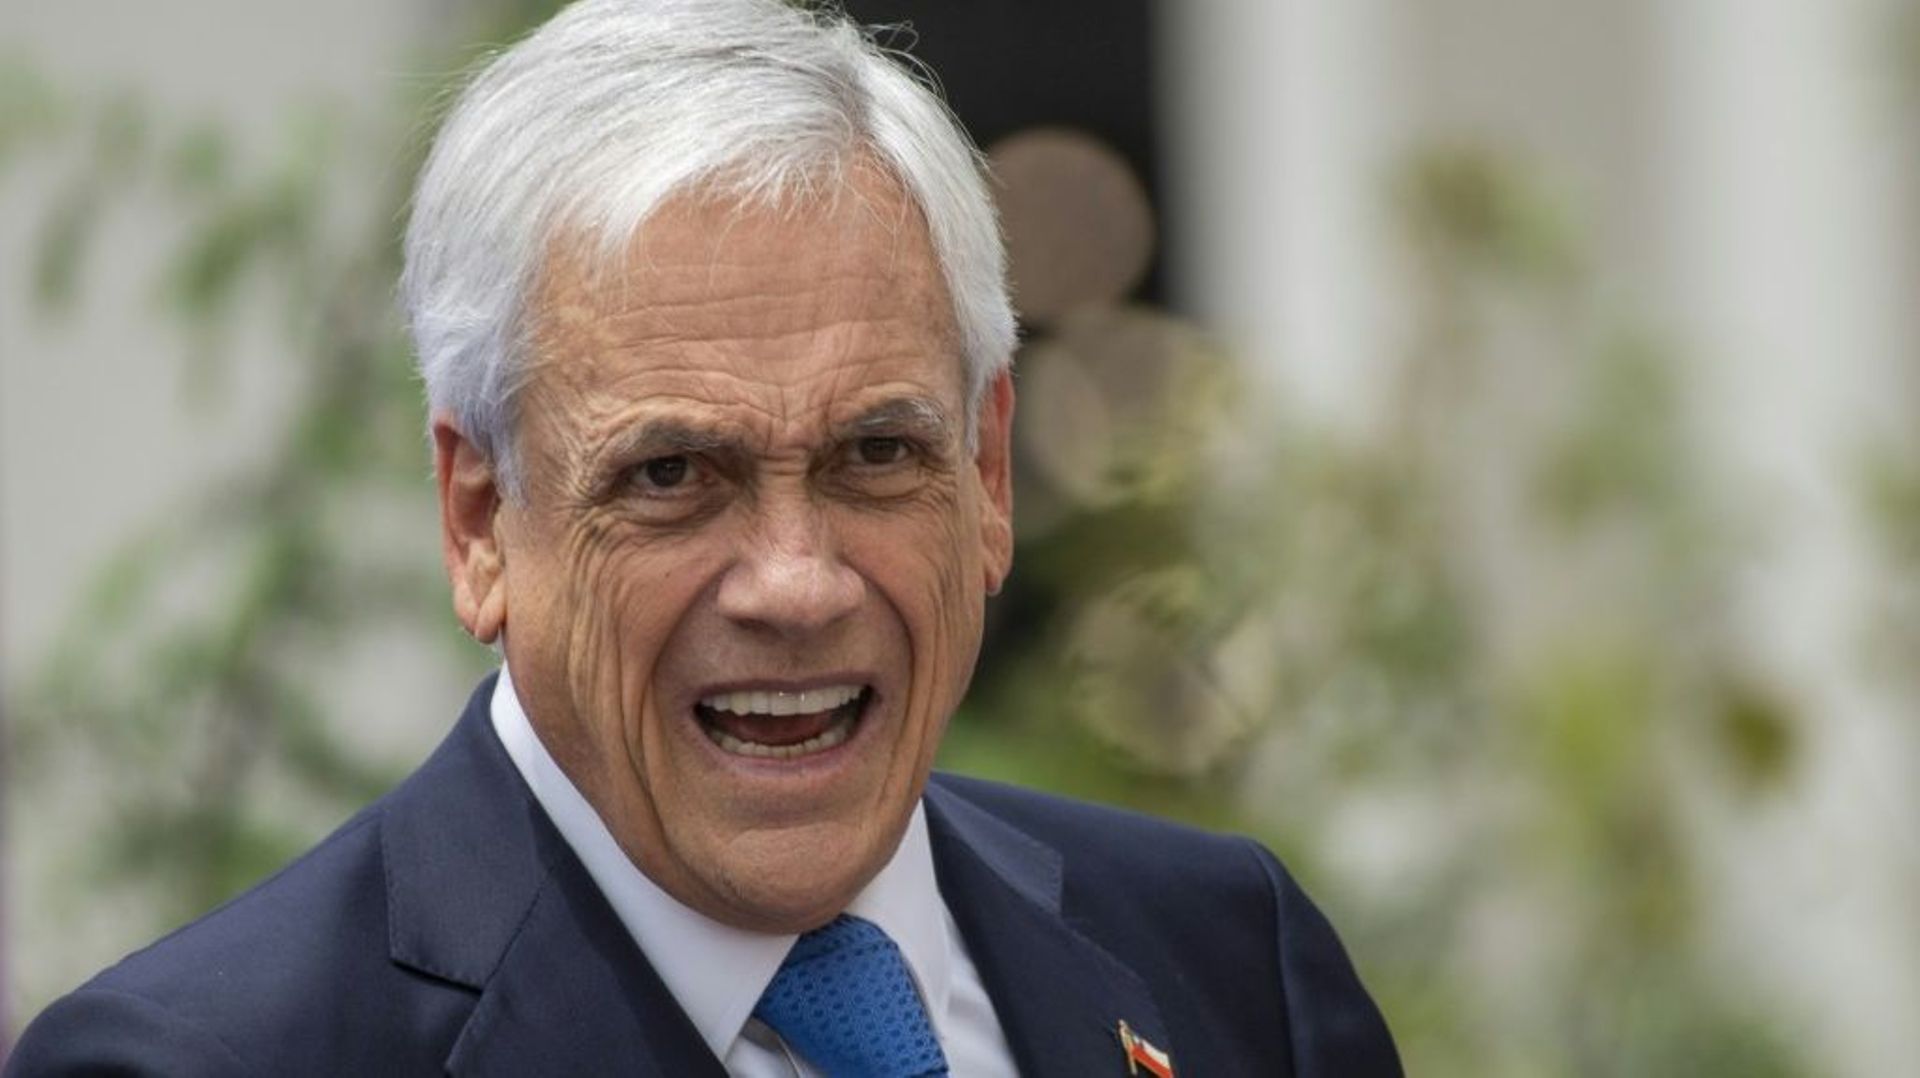 Le président chilien Sebastian Piñera, le 10 novembre 2021 à Santiago